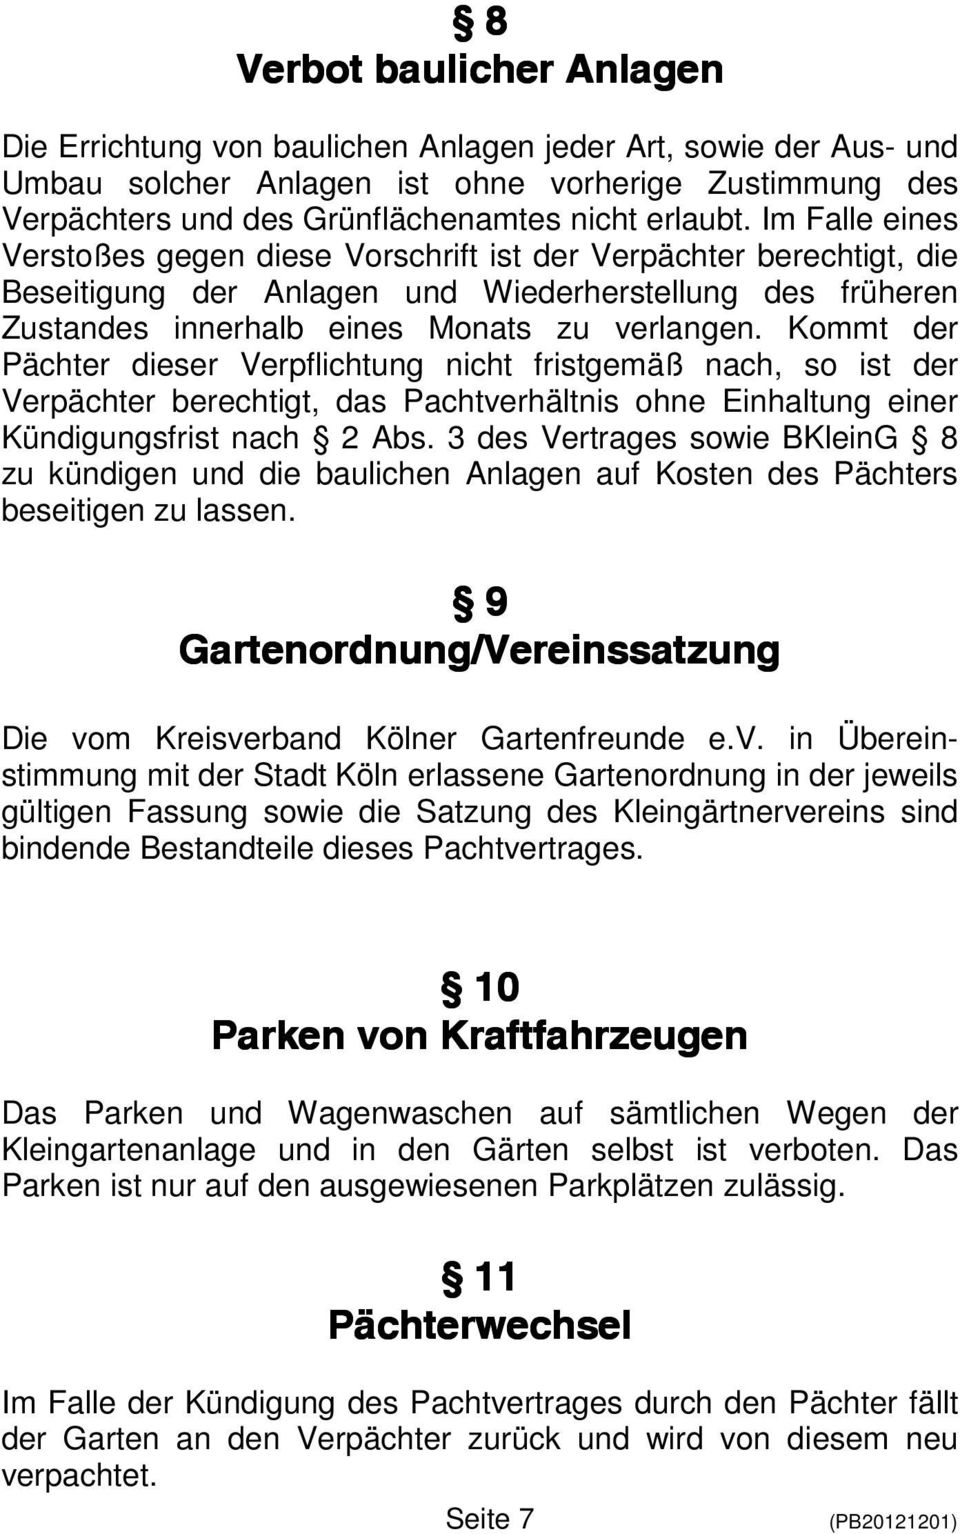 Kreisverband Kölner Gartenfreunde Ev Pachtvertrag Pdf